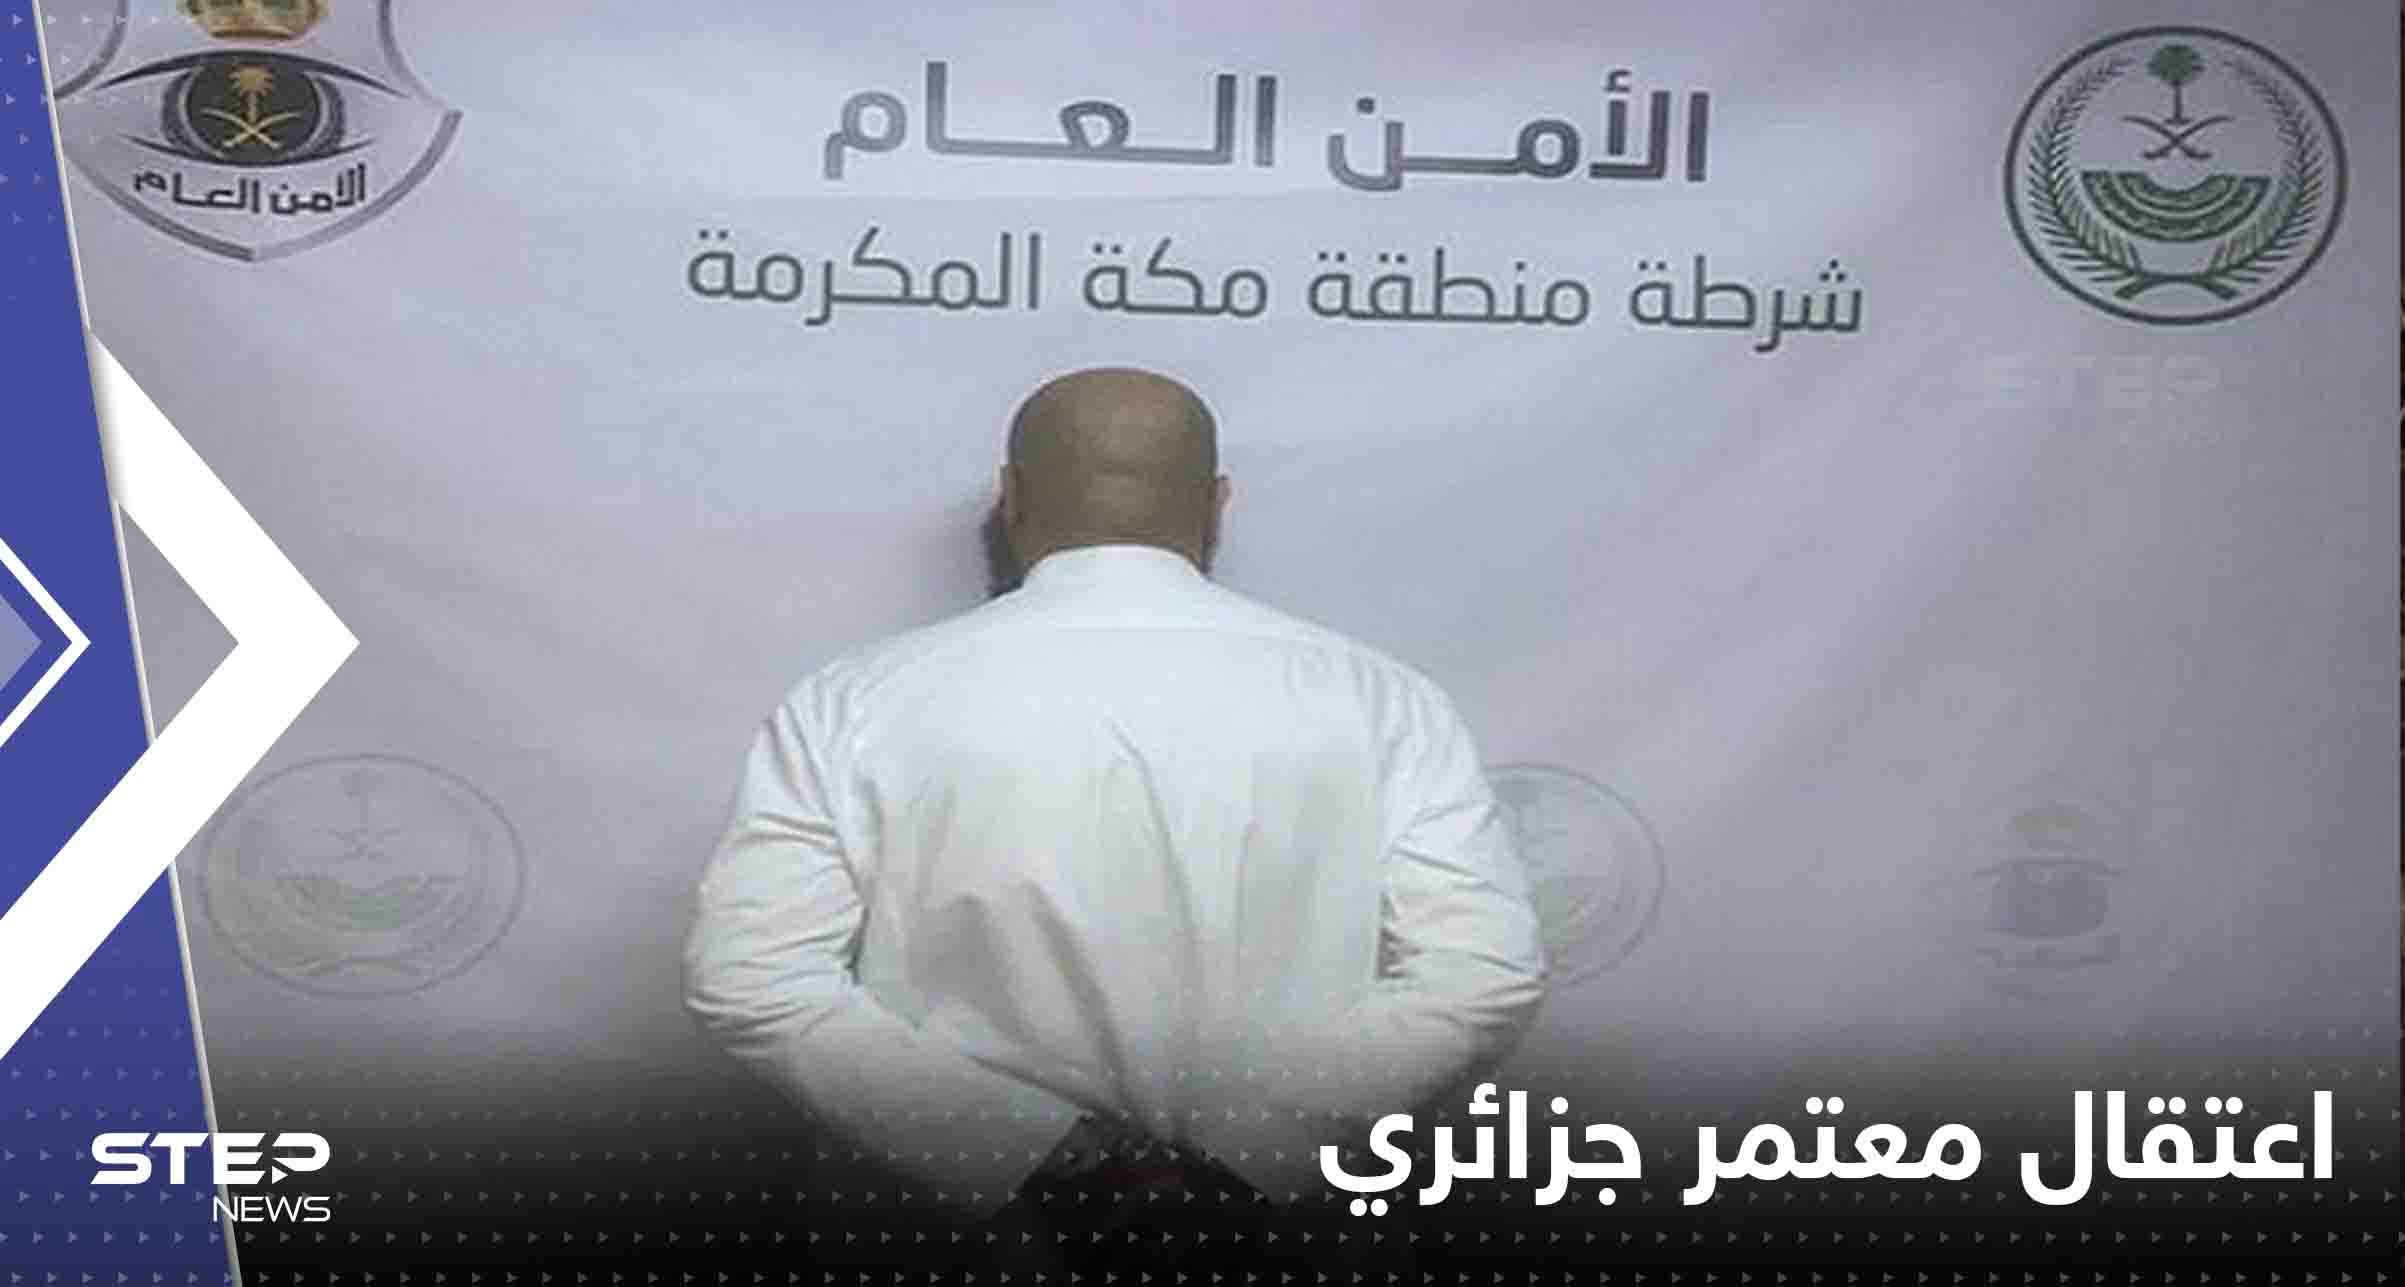 اعتقال معتمر جزائري أنهى حياة اثنين في مكة المكرمة